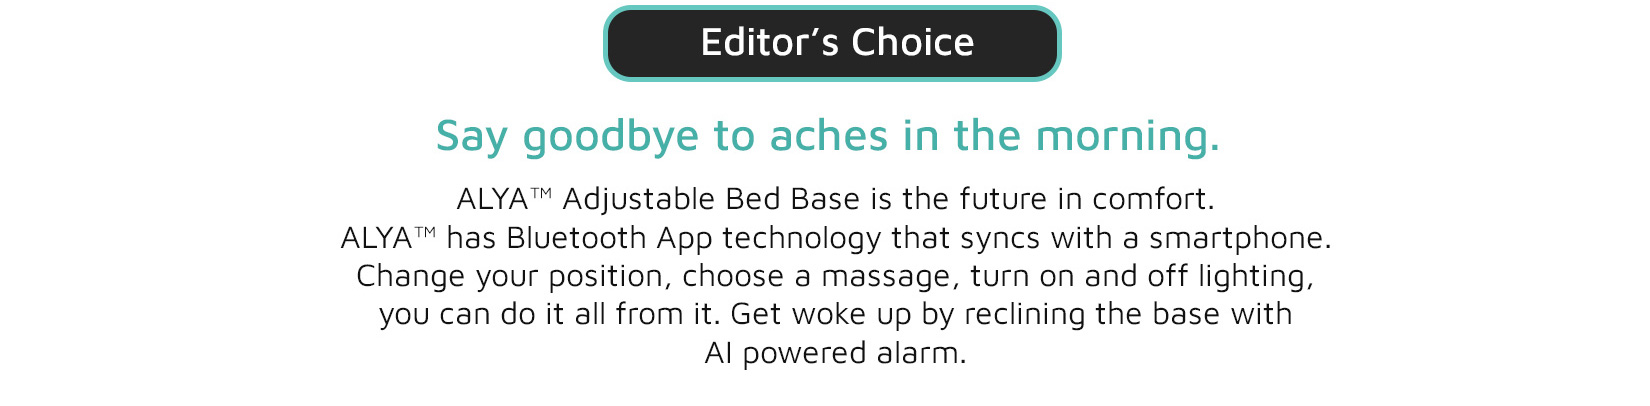 alya-adjustable-bed-base-product-description-2.jpg